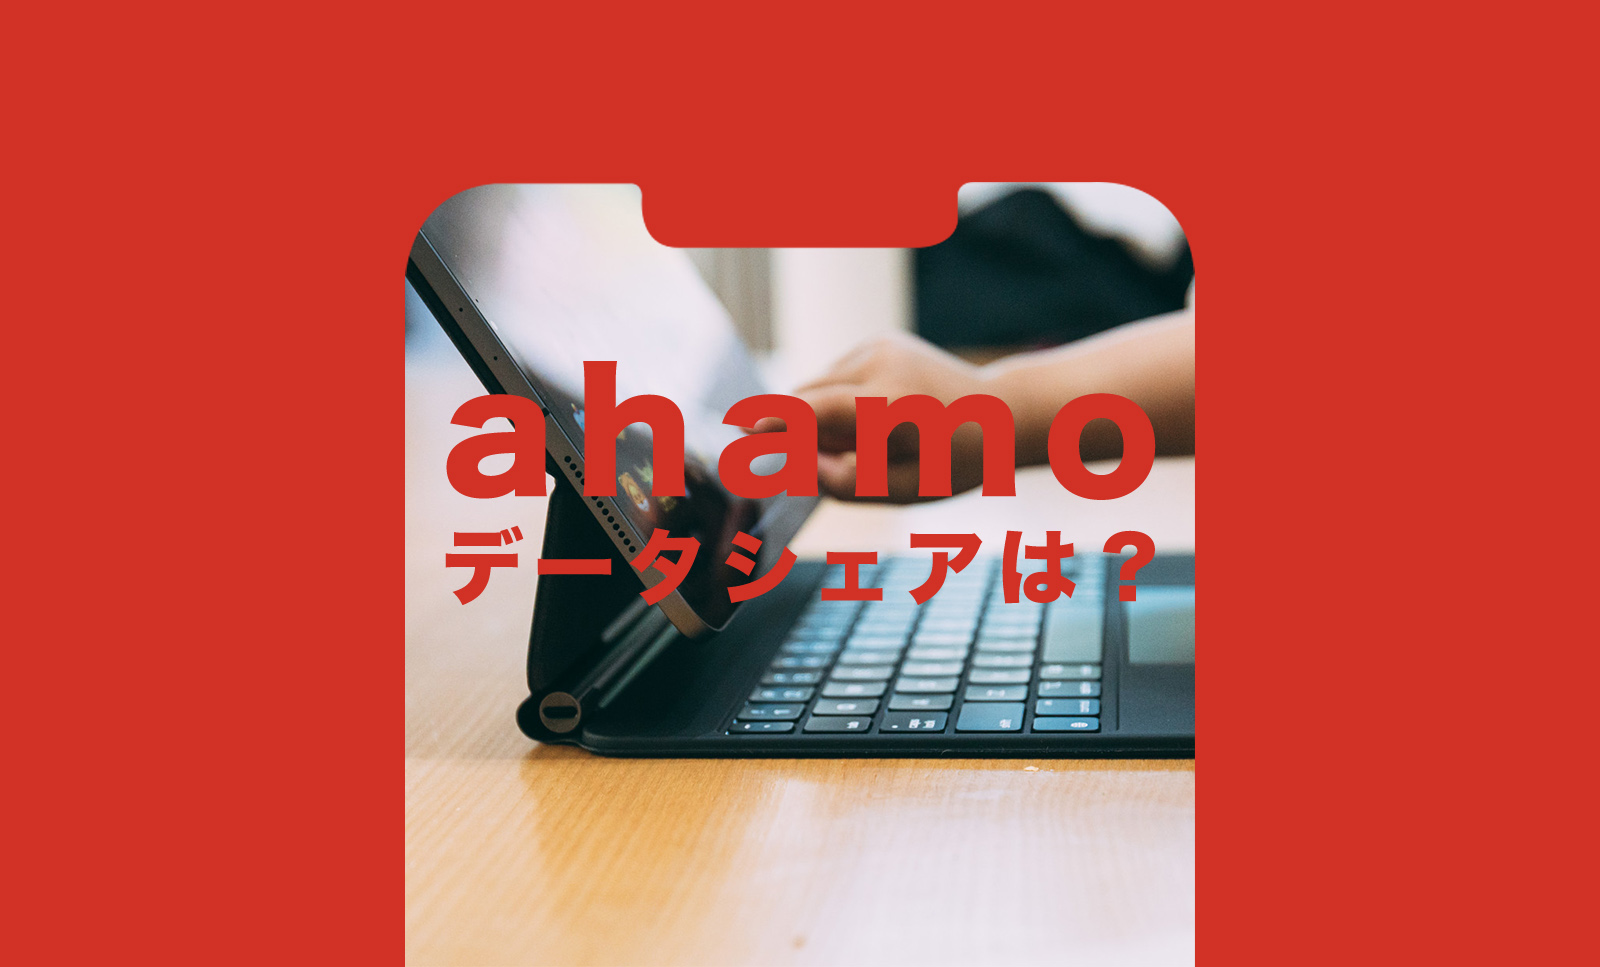 ahamo(アハモ)でデータシェアプランはあるか解説のサムネイル画像